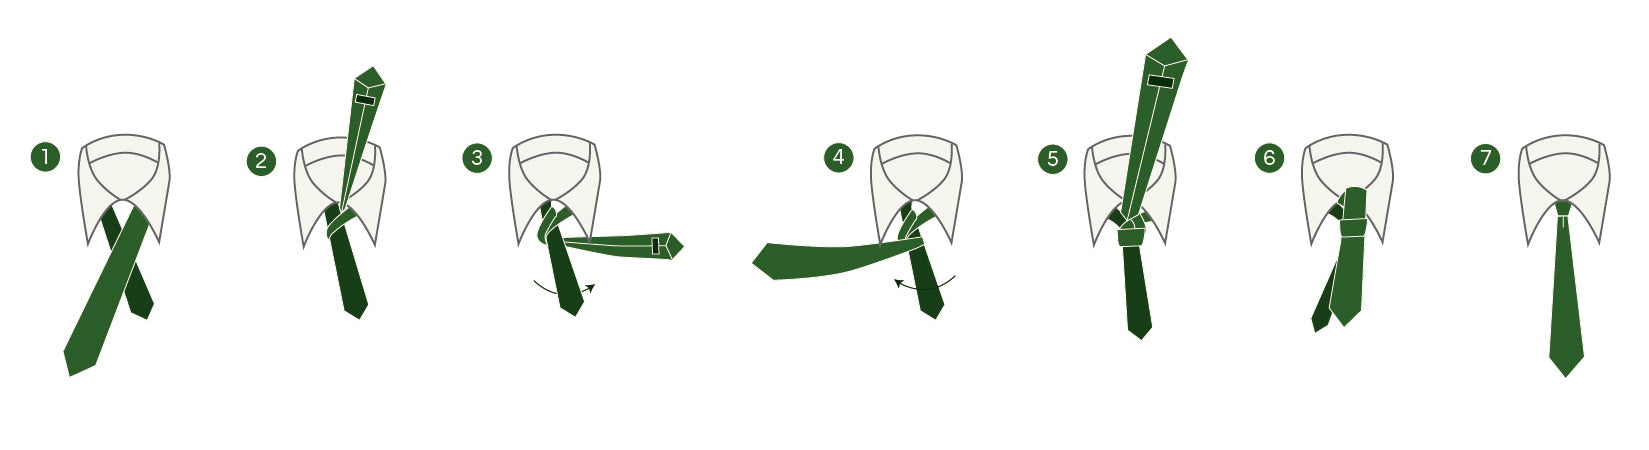 how-to-tie-windsor-tie-illustration